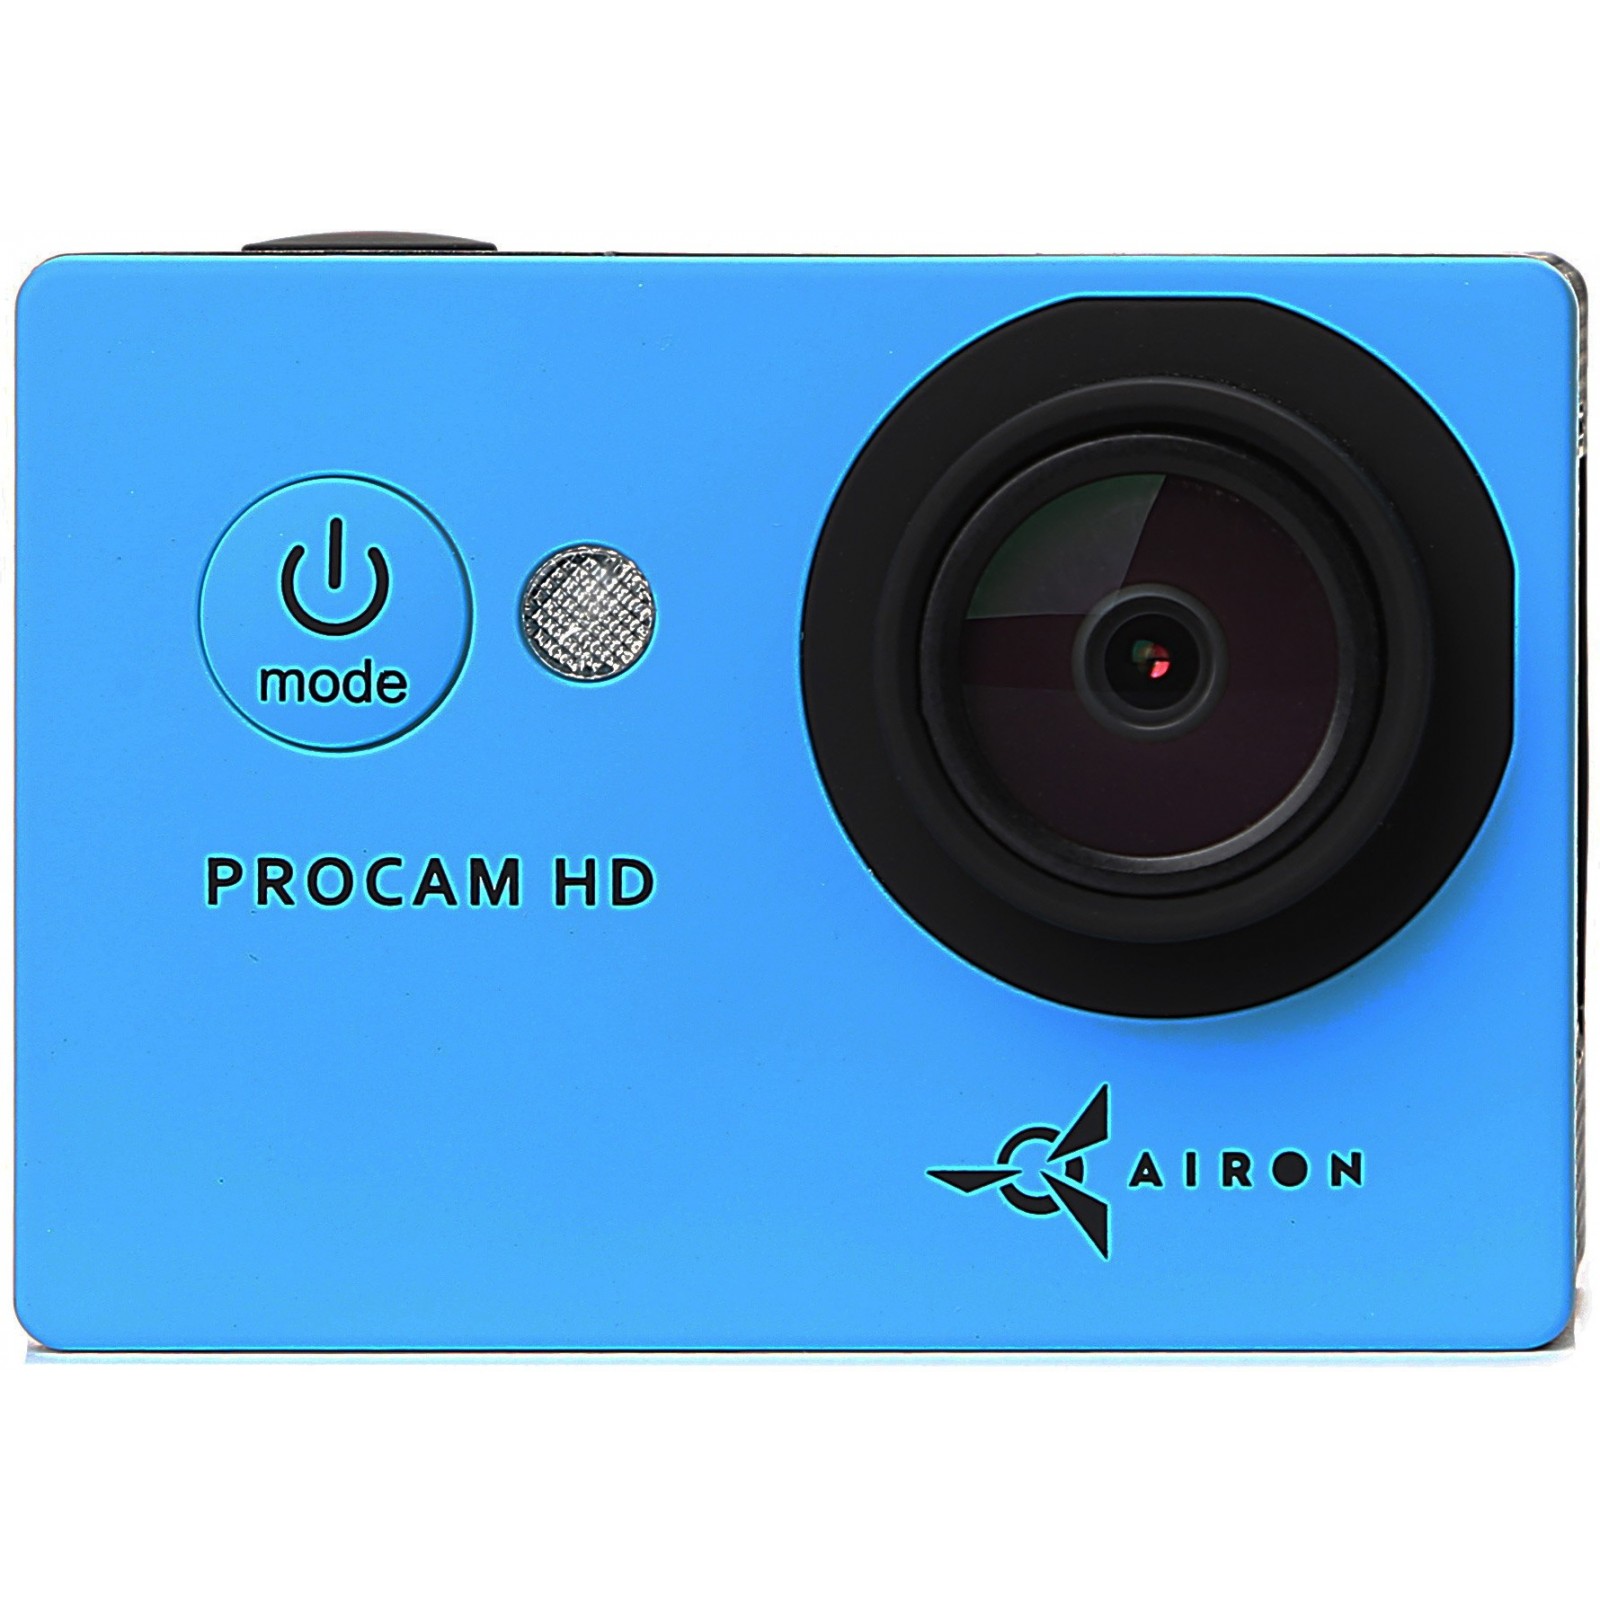 Екшн-камера AIRON ProCam HD blue (4285234589563) в Києві